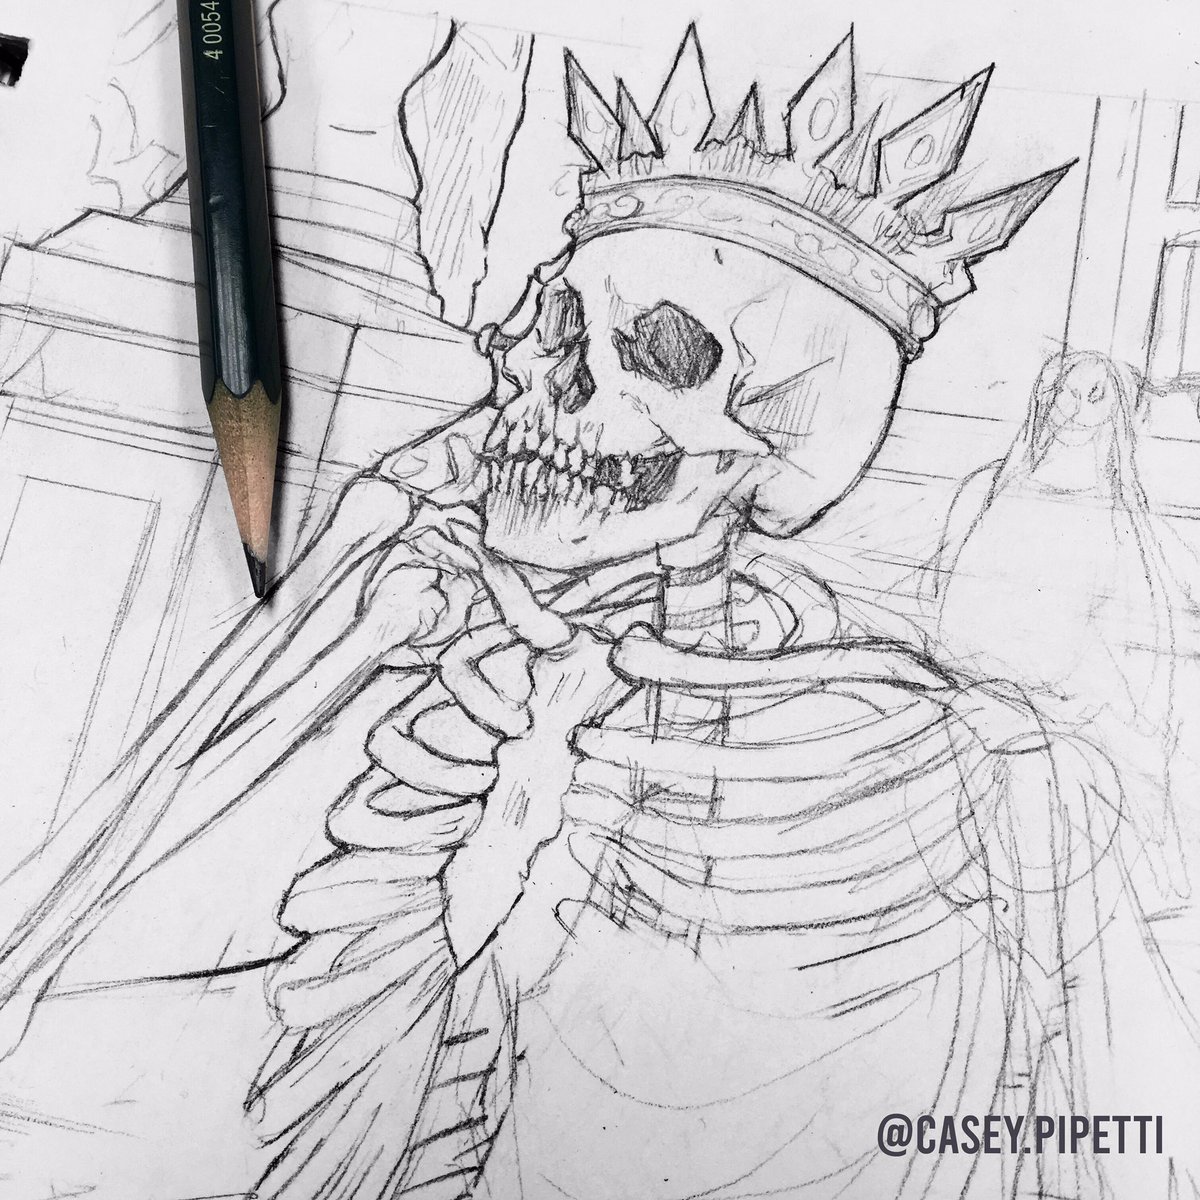 Getting a head-start on Inktober.
-
-
-
#drawing #sketch #skeleton #sketchbooksketch #sketchbookpages #pencildrawing #skeletonking #deadking #throne #wip #wipdrawing #drawingwip #sketchbookwip #darkdrawings #originalart #originalartworks #artistonig #linedrawings